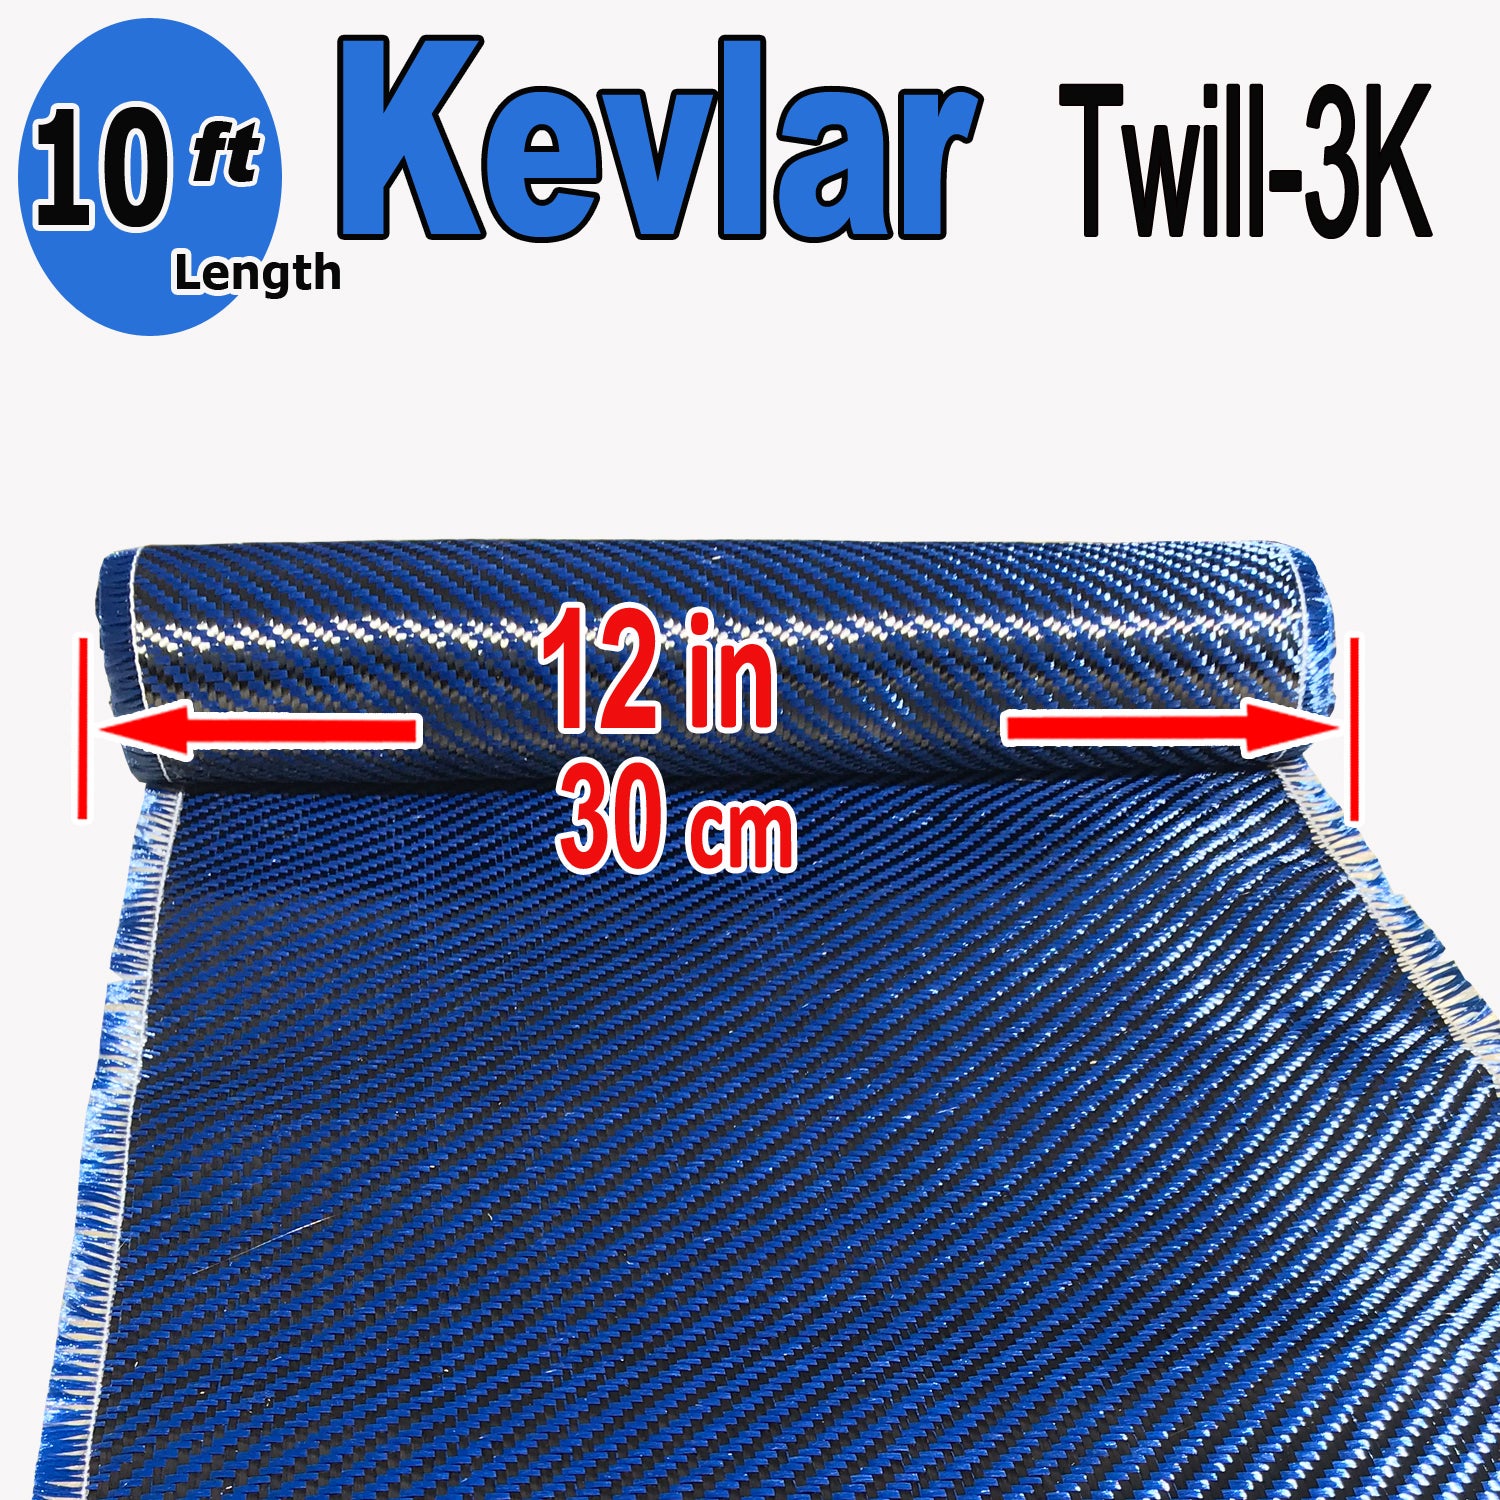 Tessuto di kevlar/carbonio twill 2/2 215 g/m2